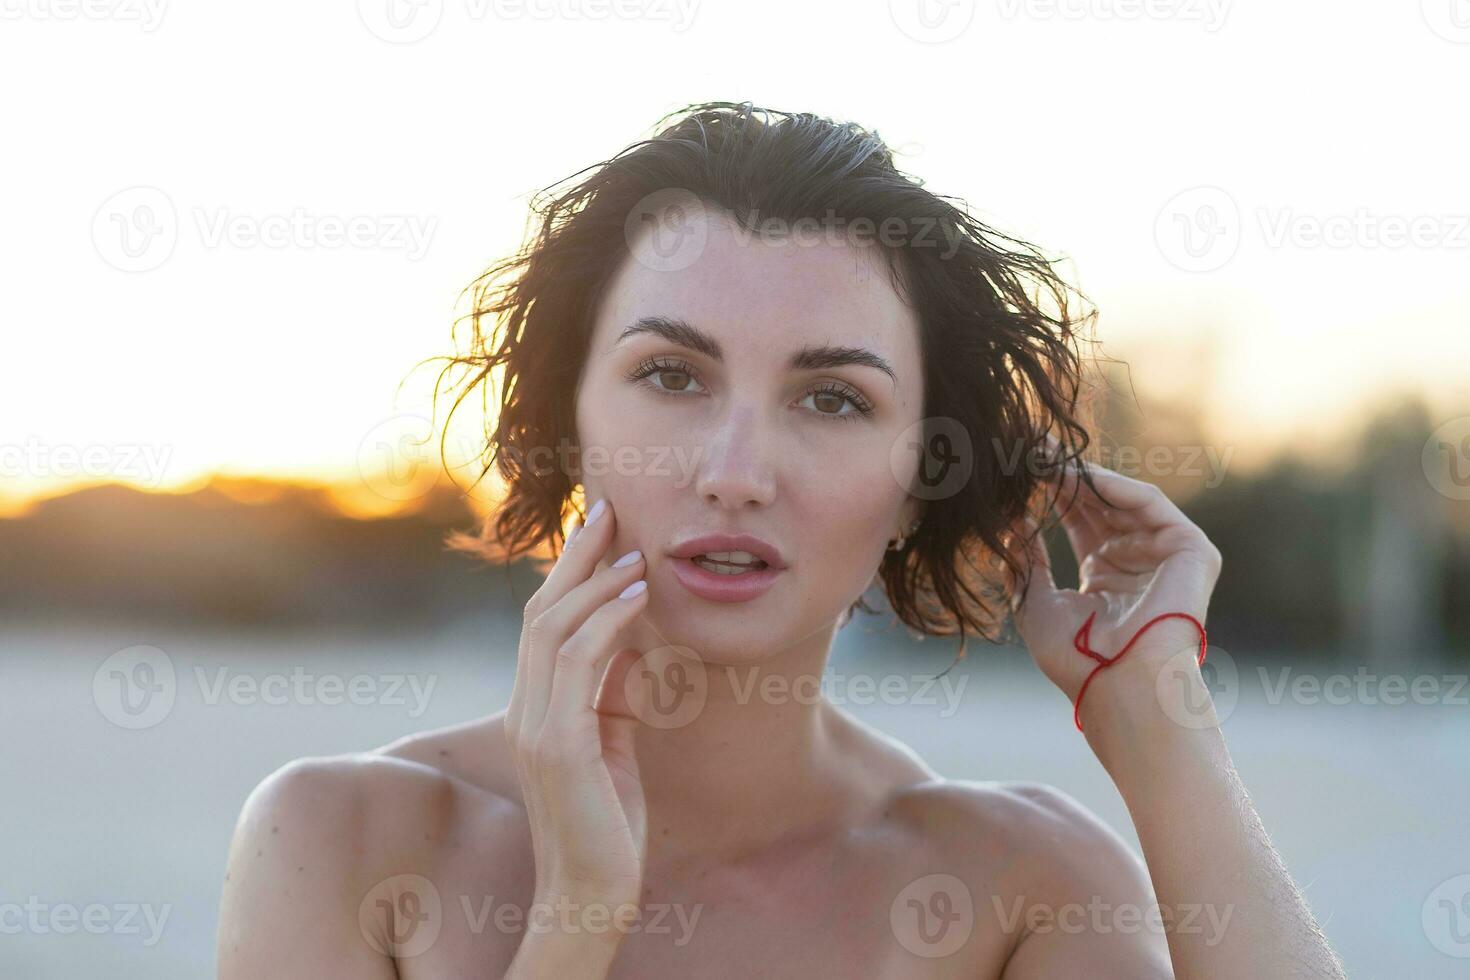 Sexy back of a beautiful woman in red bikini on sea background photo